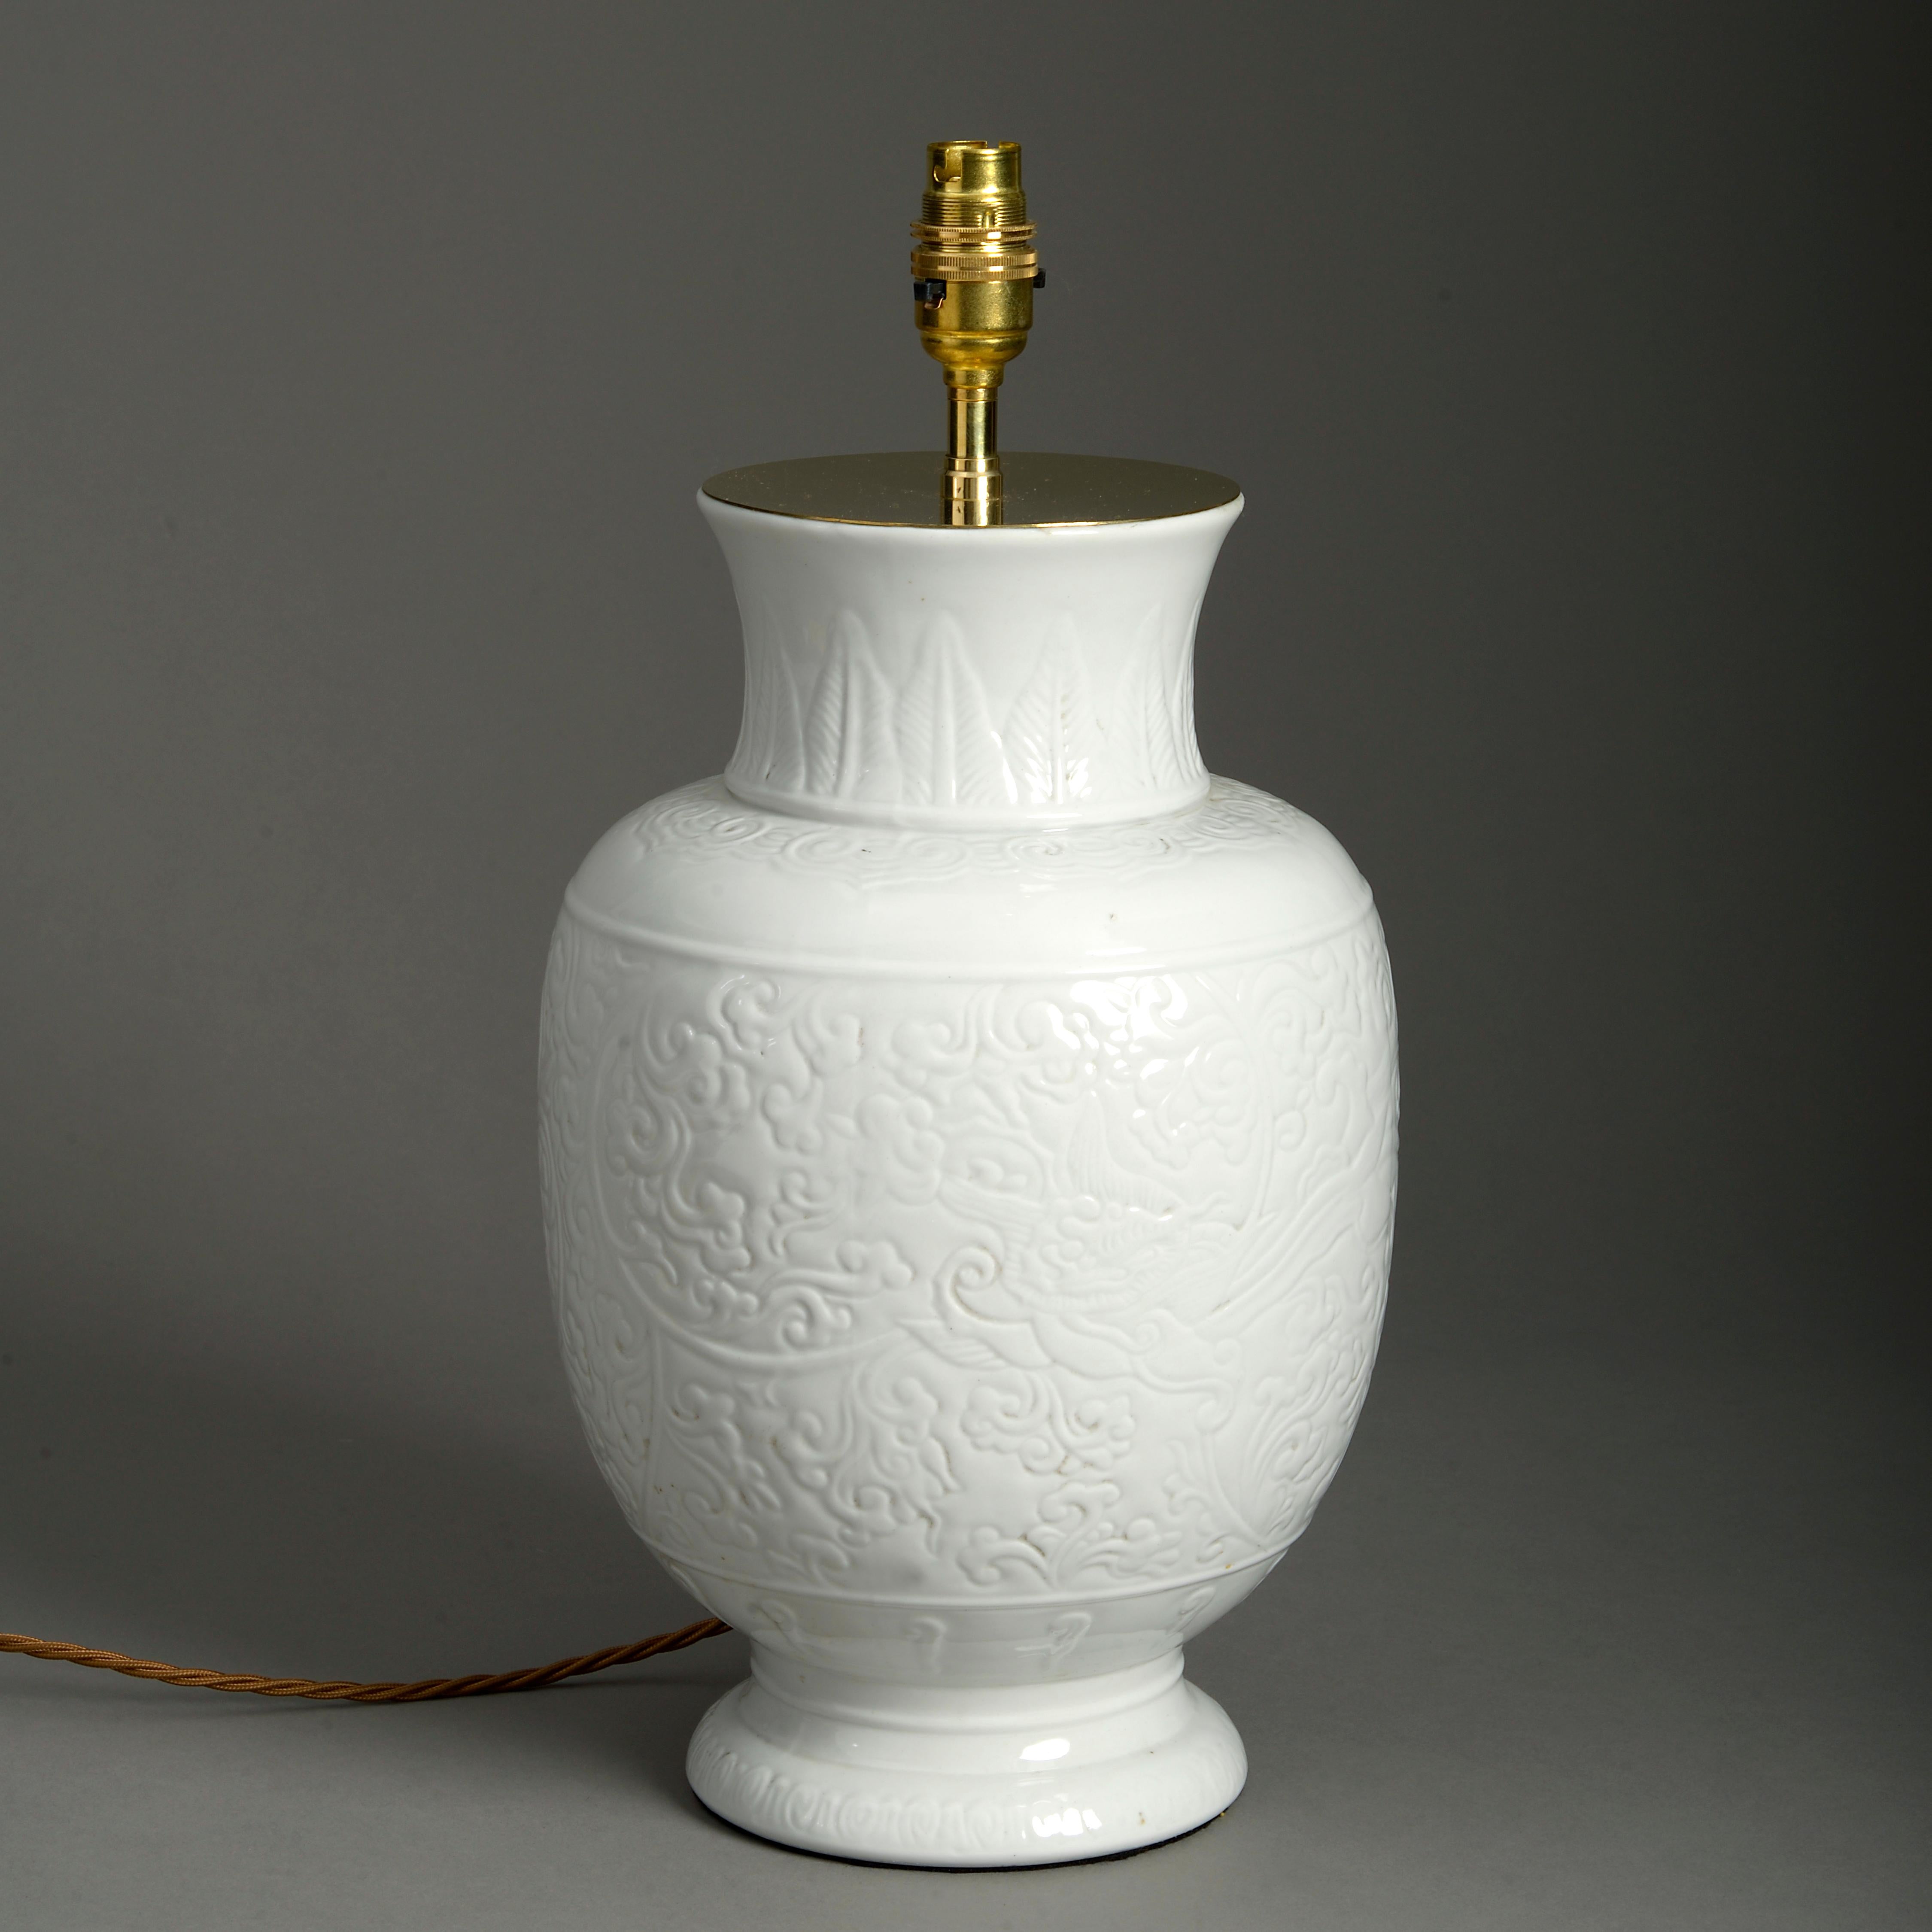 Vase en porcelaine blanche émaillée de la fin du 19e siècle, le corps avec une décoration incisée.

Aujourd'hui, elle est utilisée comme lampe de table.

Les dimensions se réfèrent uniquement au vase et n'incluent pas les composants